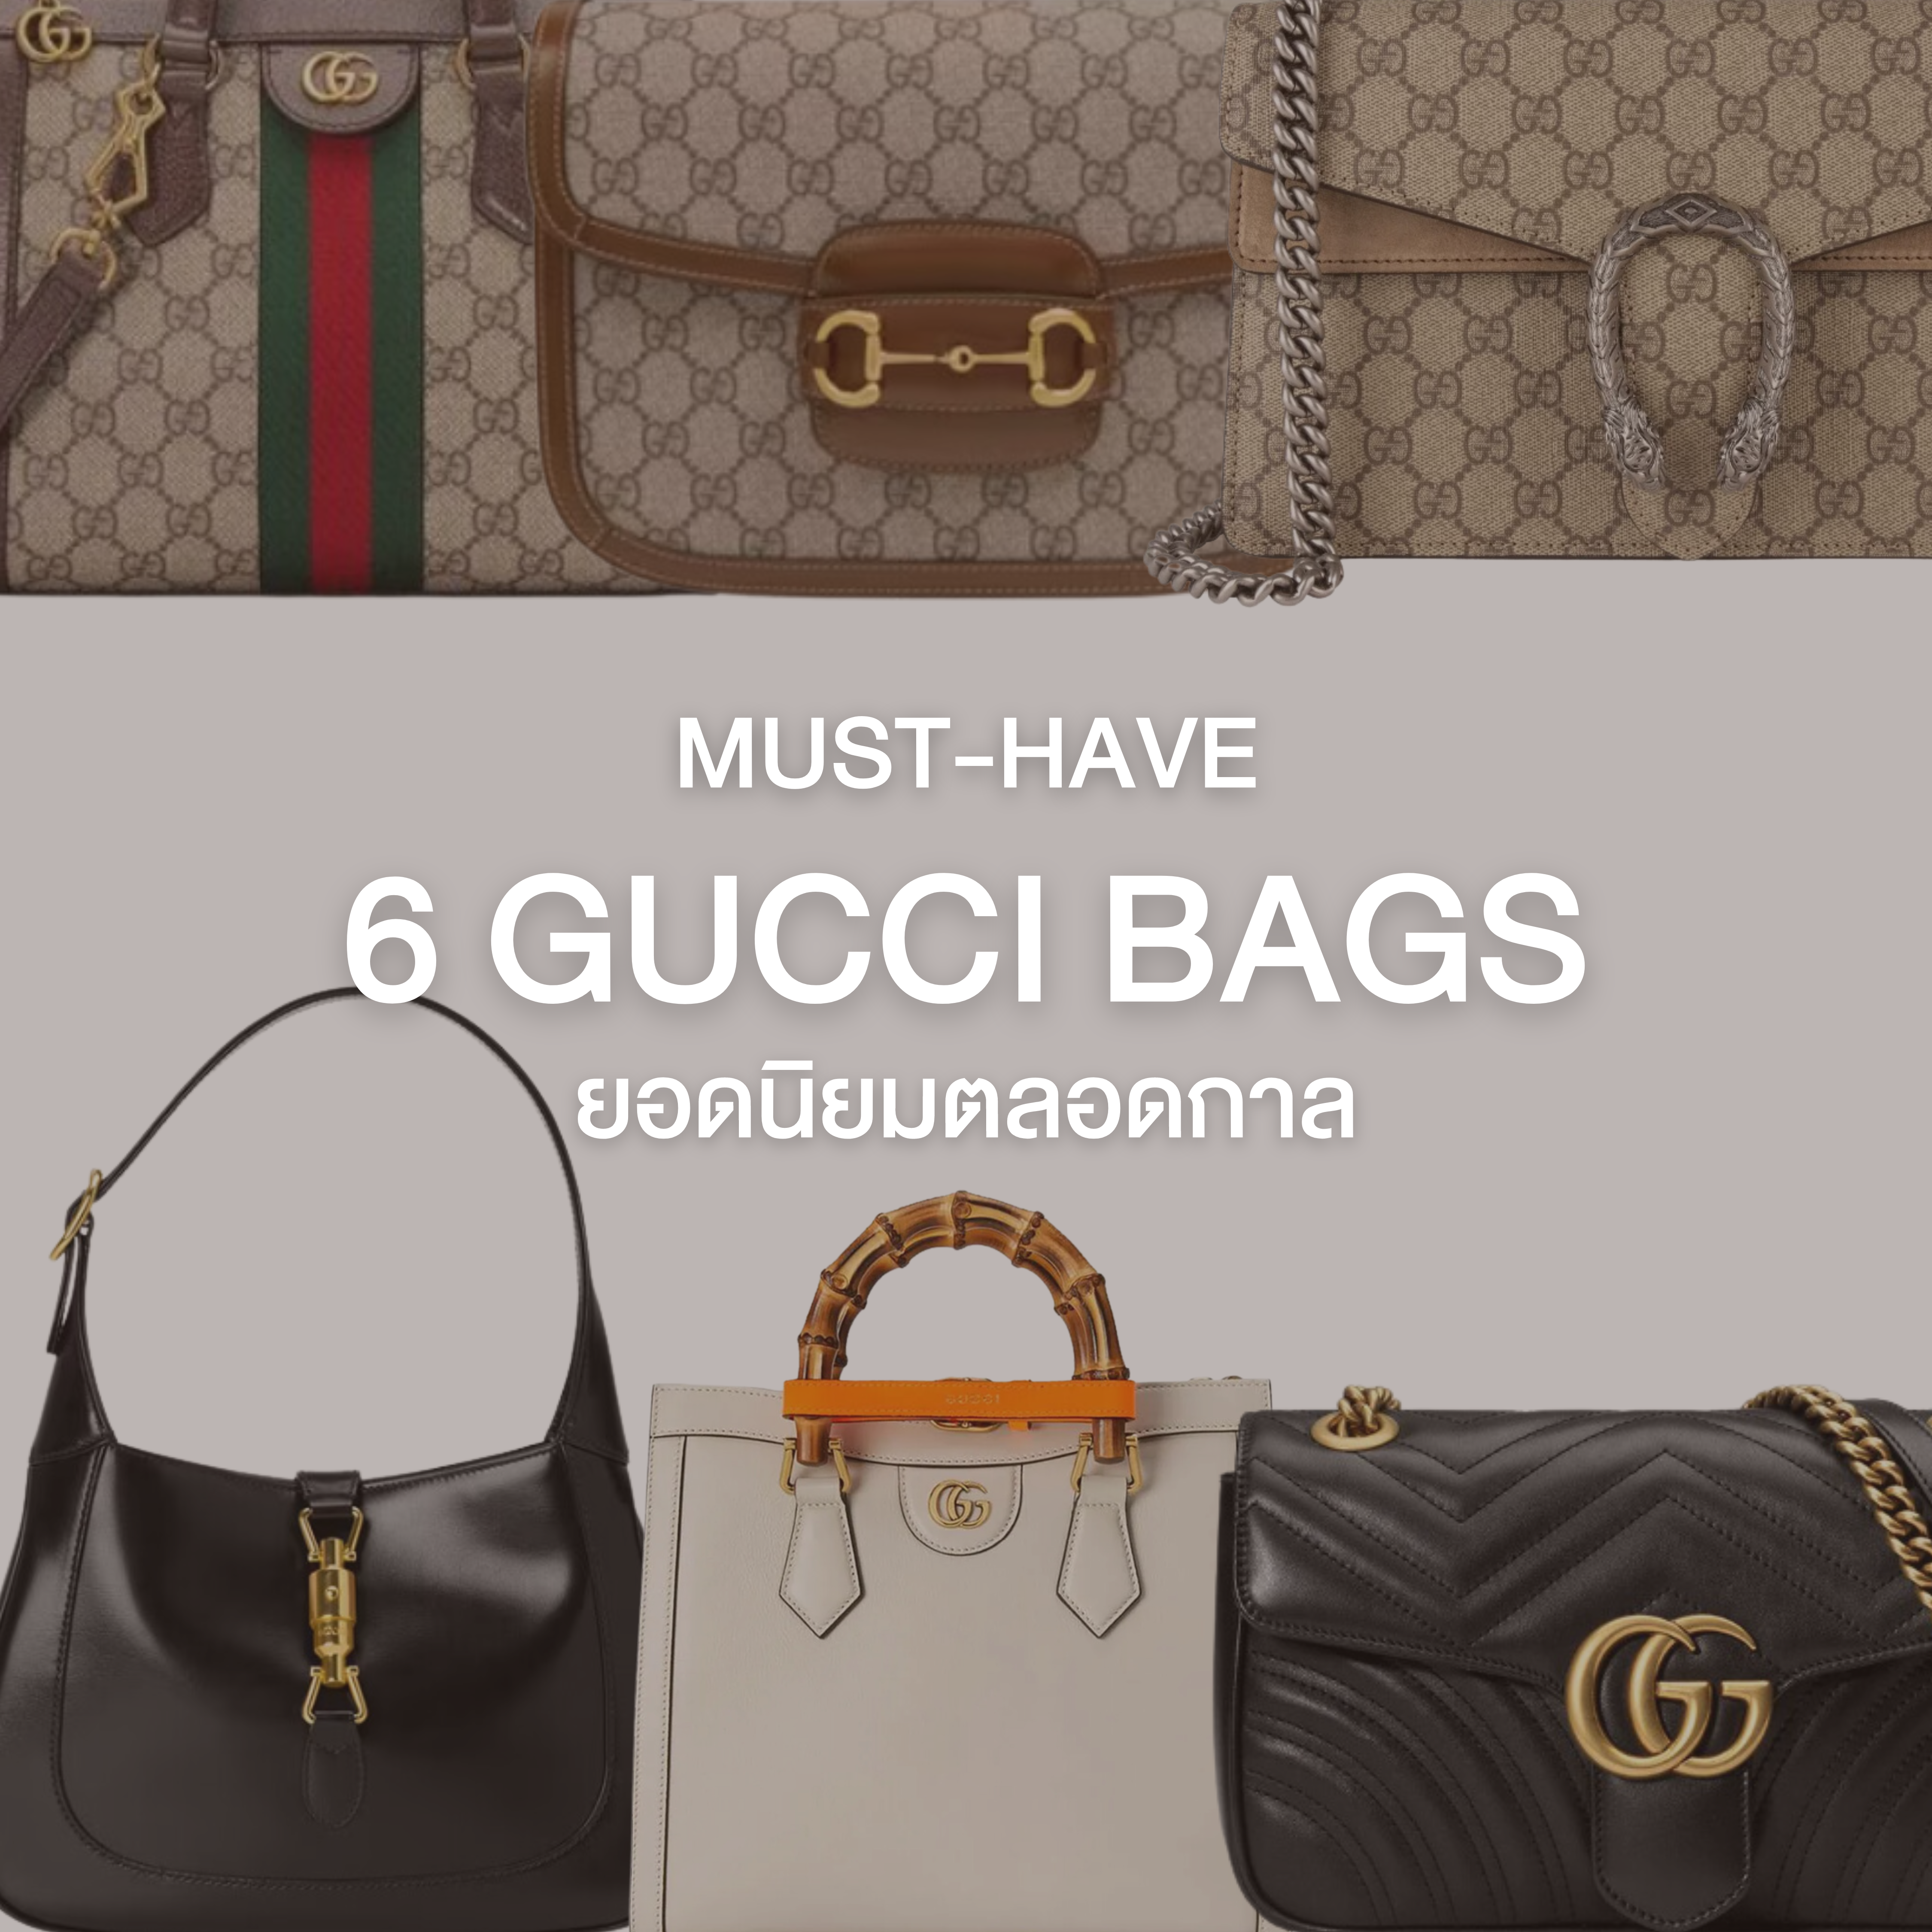 6 Gucci Bags ยอดนิยมตลอดกาล